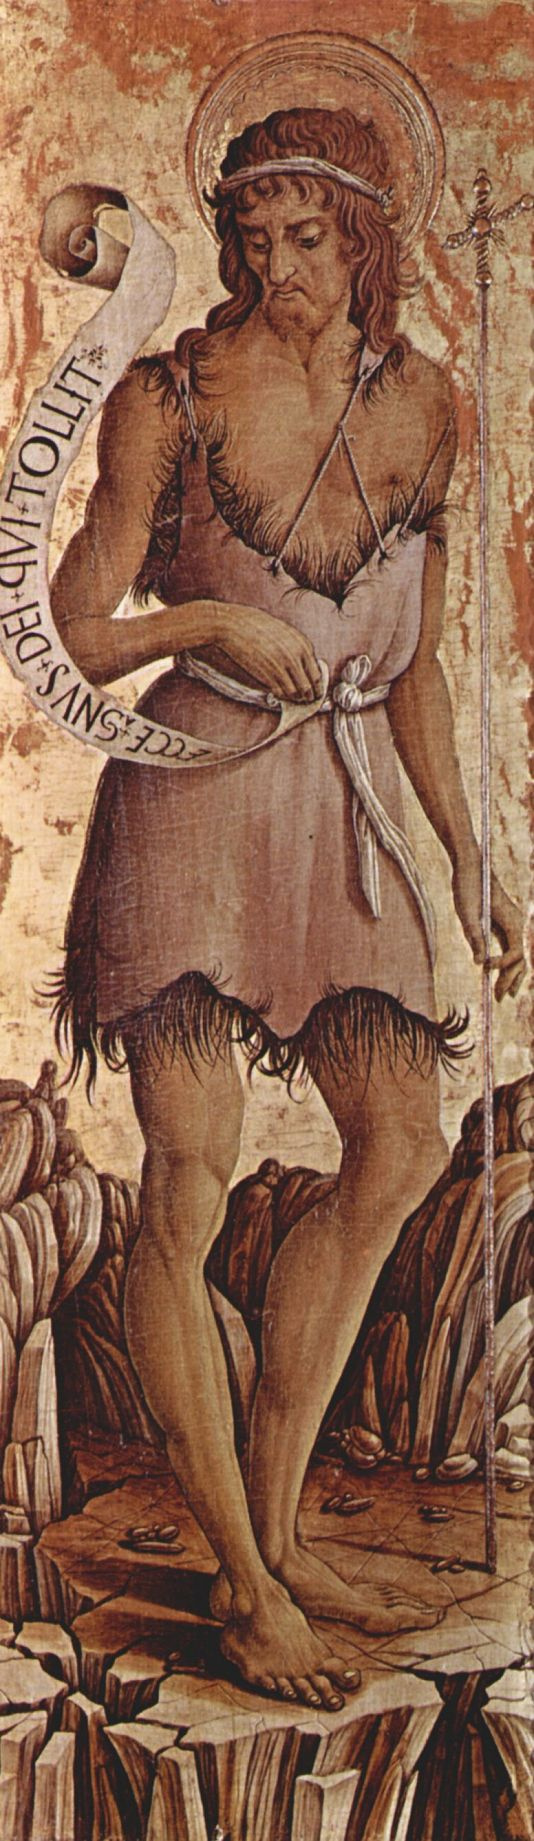 Карло Кривелли. Святой Иоанн Креститель. Алтарь из церкви Сан Сильвестро в Масса Фермана, крайняя левая доска